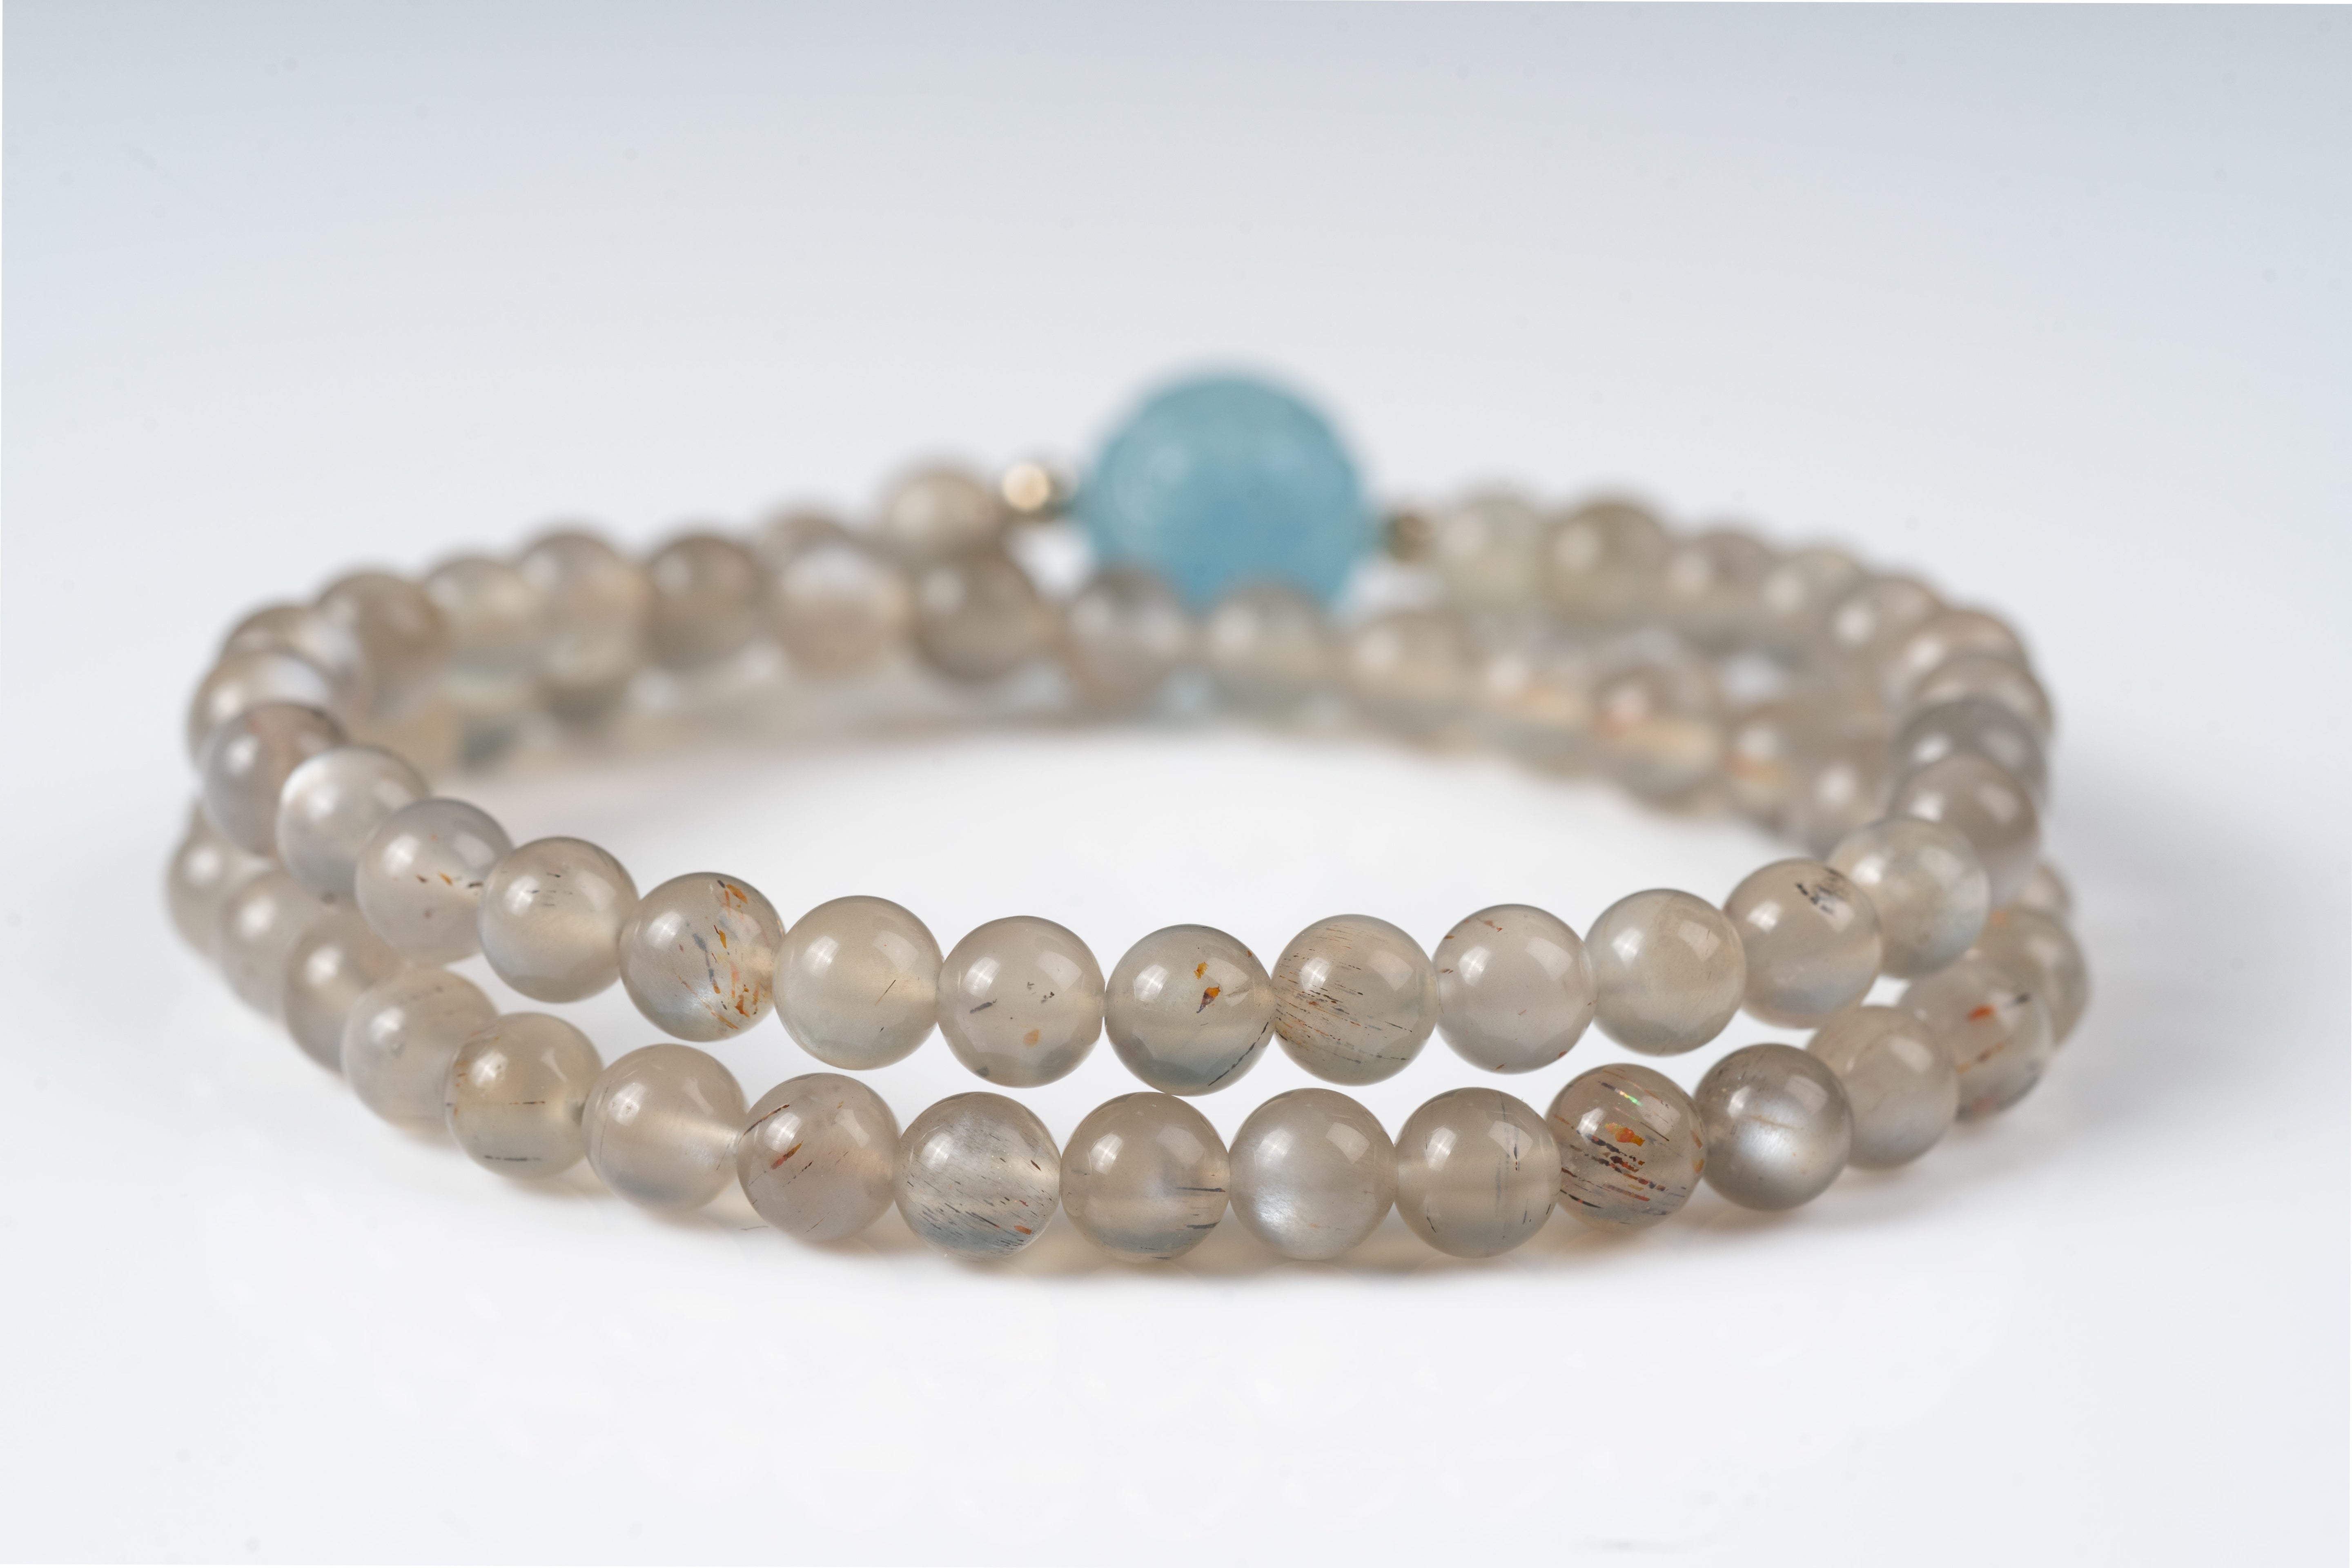 Aquamarine & sliver moonstone Sterling silver bracelet